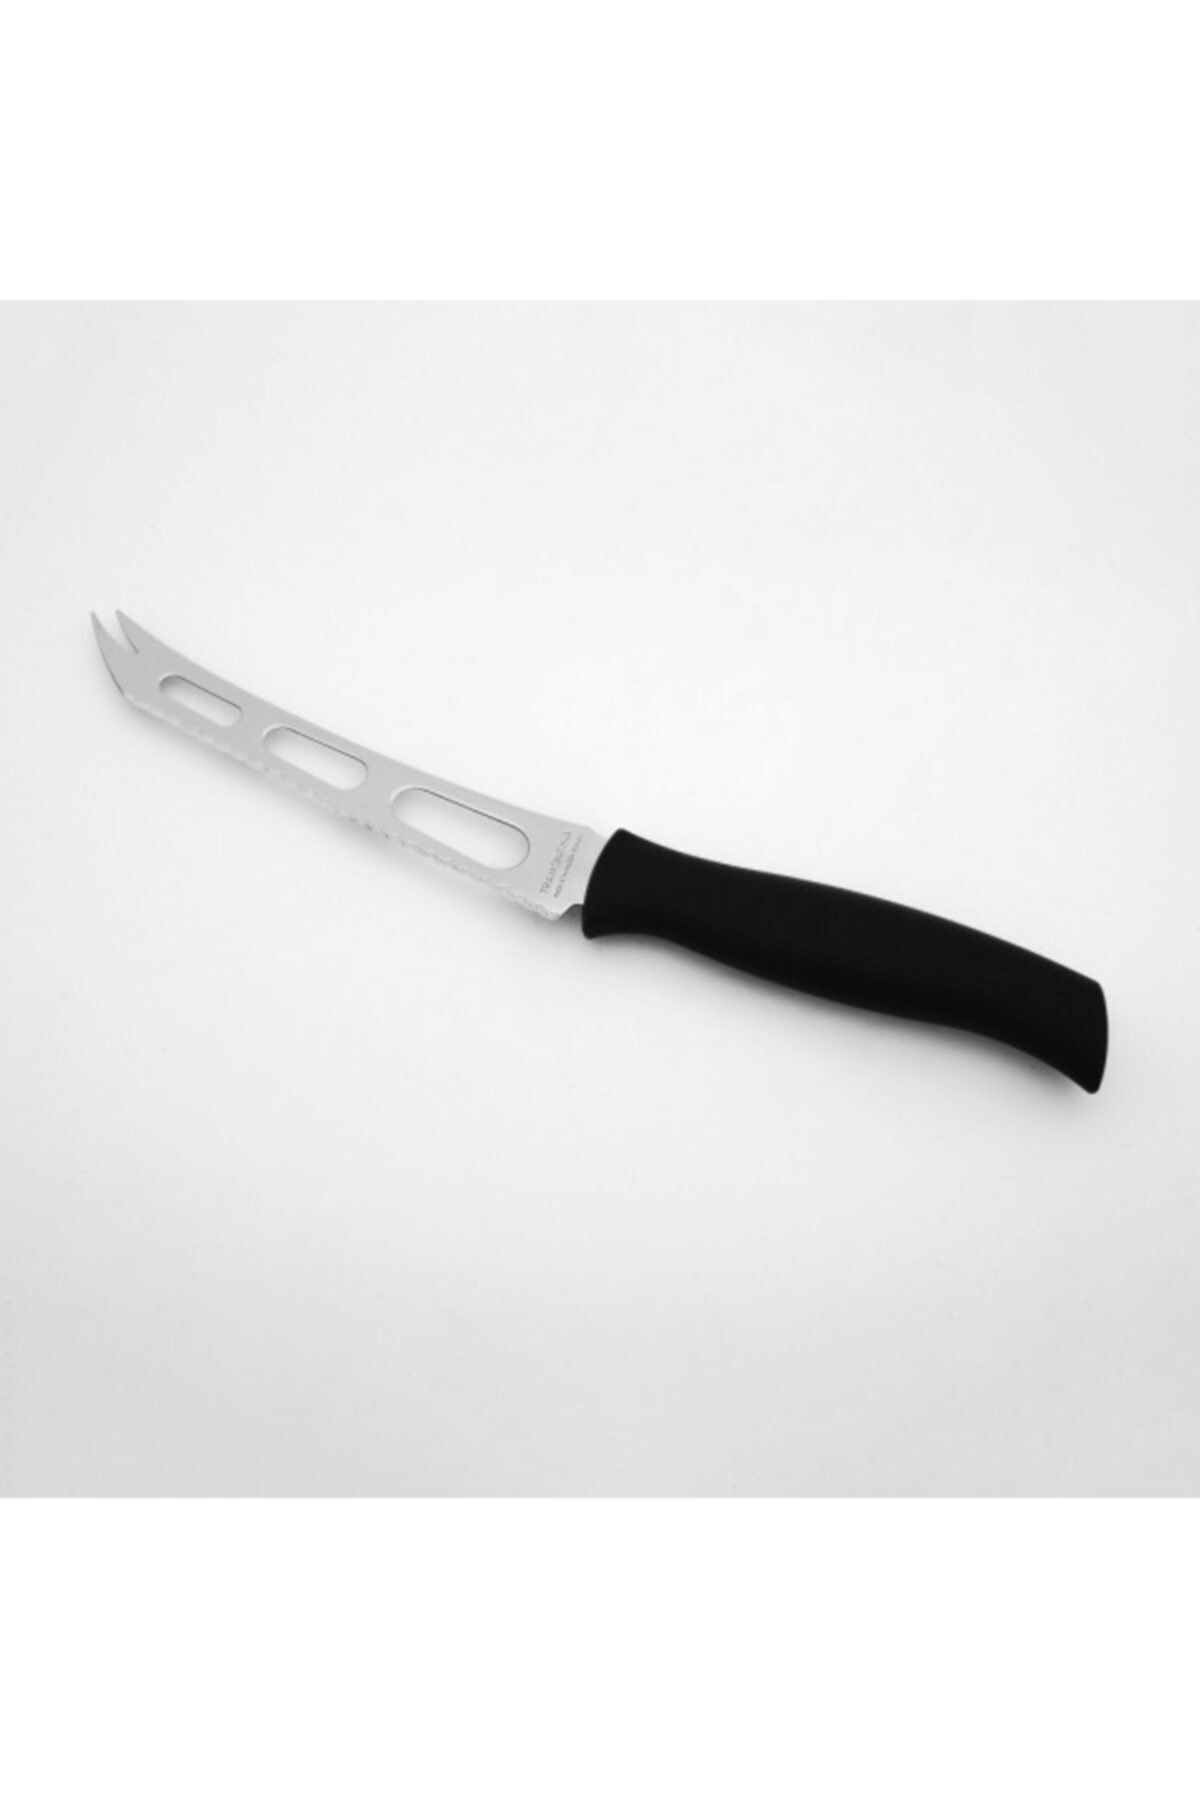 Ün-Ev Peynir Bıçağı